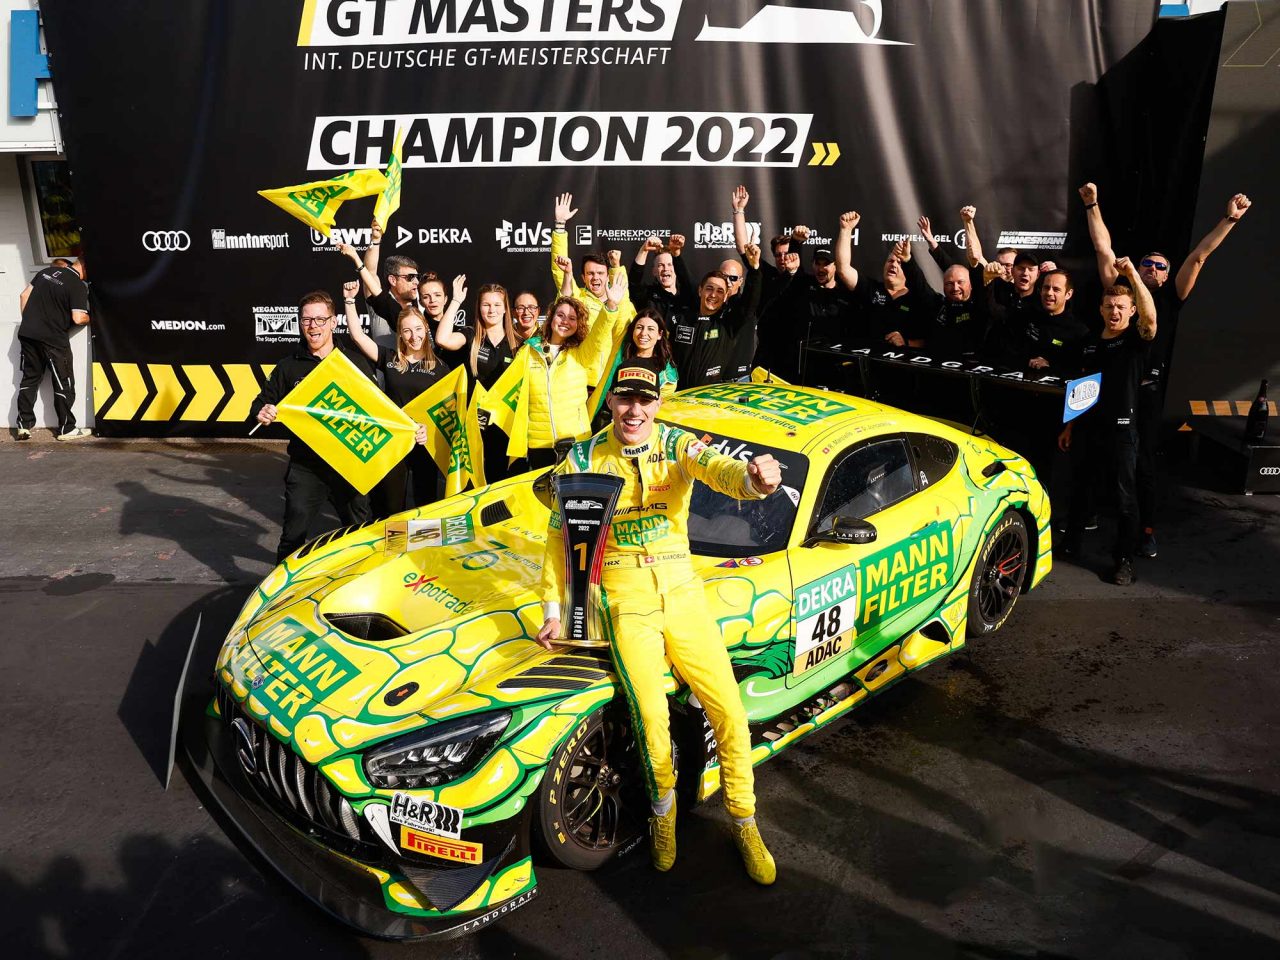 The ADAC GT Masters Champion 2022: Raffaele Marciello